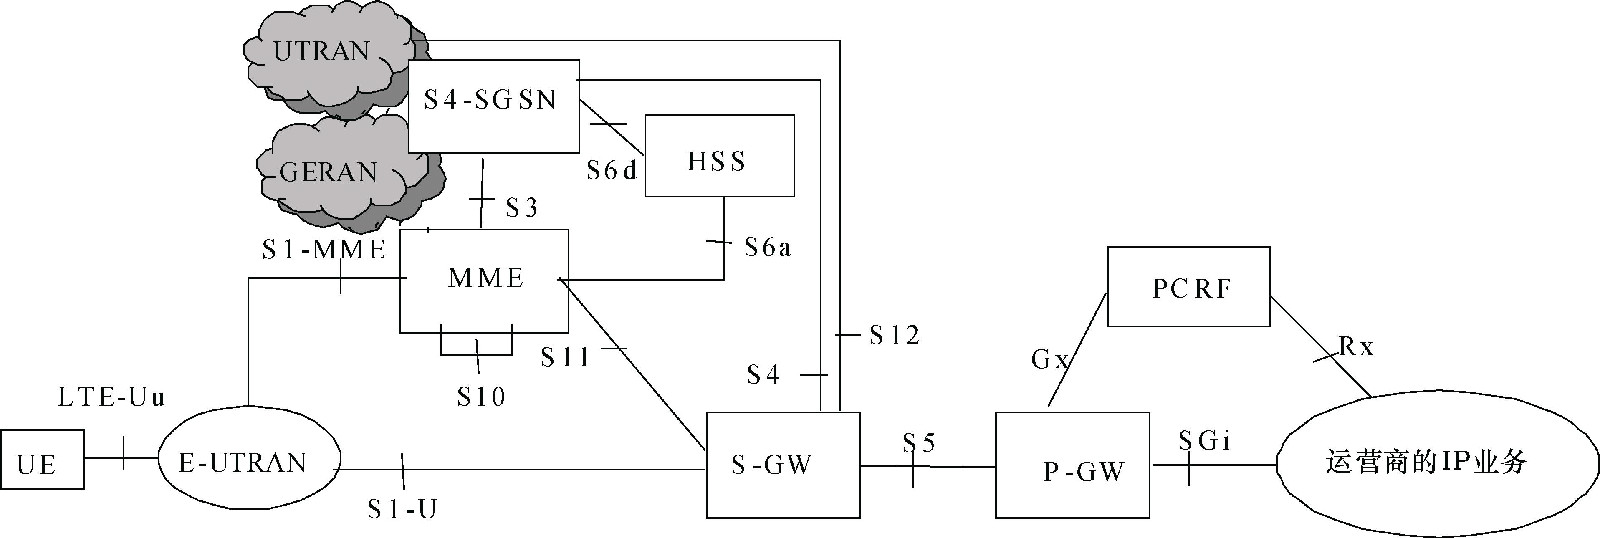 圖7  3GPP非漫遊架構—S-GW與P-GW分設